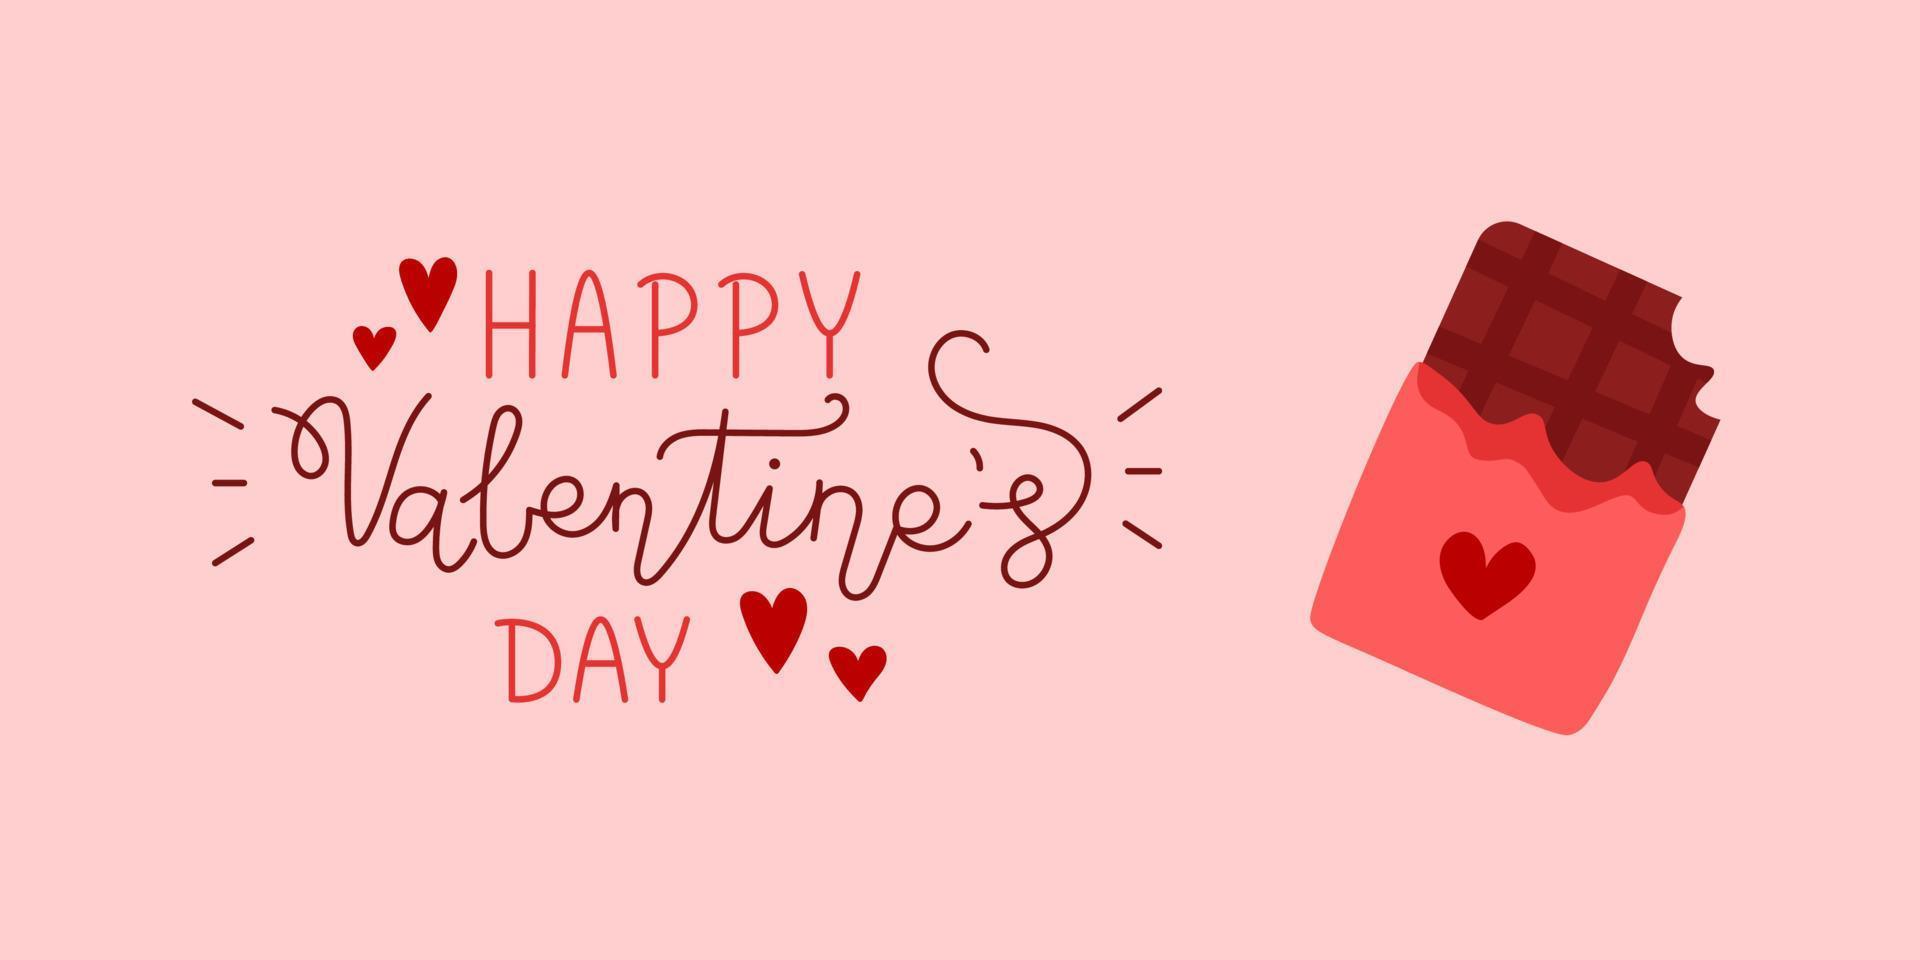 bannière de la saint valentin avec des coeurs. affiche romantique avec texte happy valentines day et barre de chocolat. illustration vectorielle dans les couleurs rouges et roses. amour et romance. vecteur